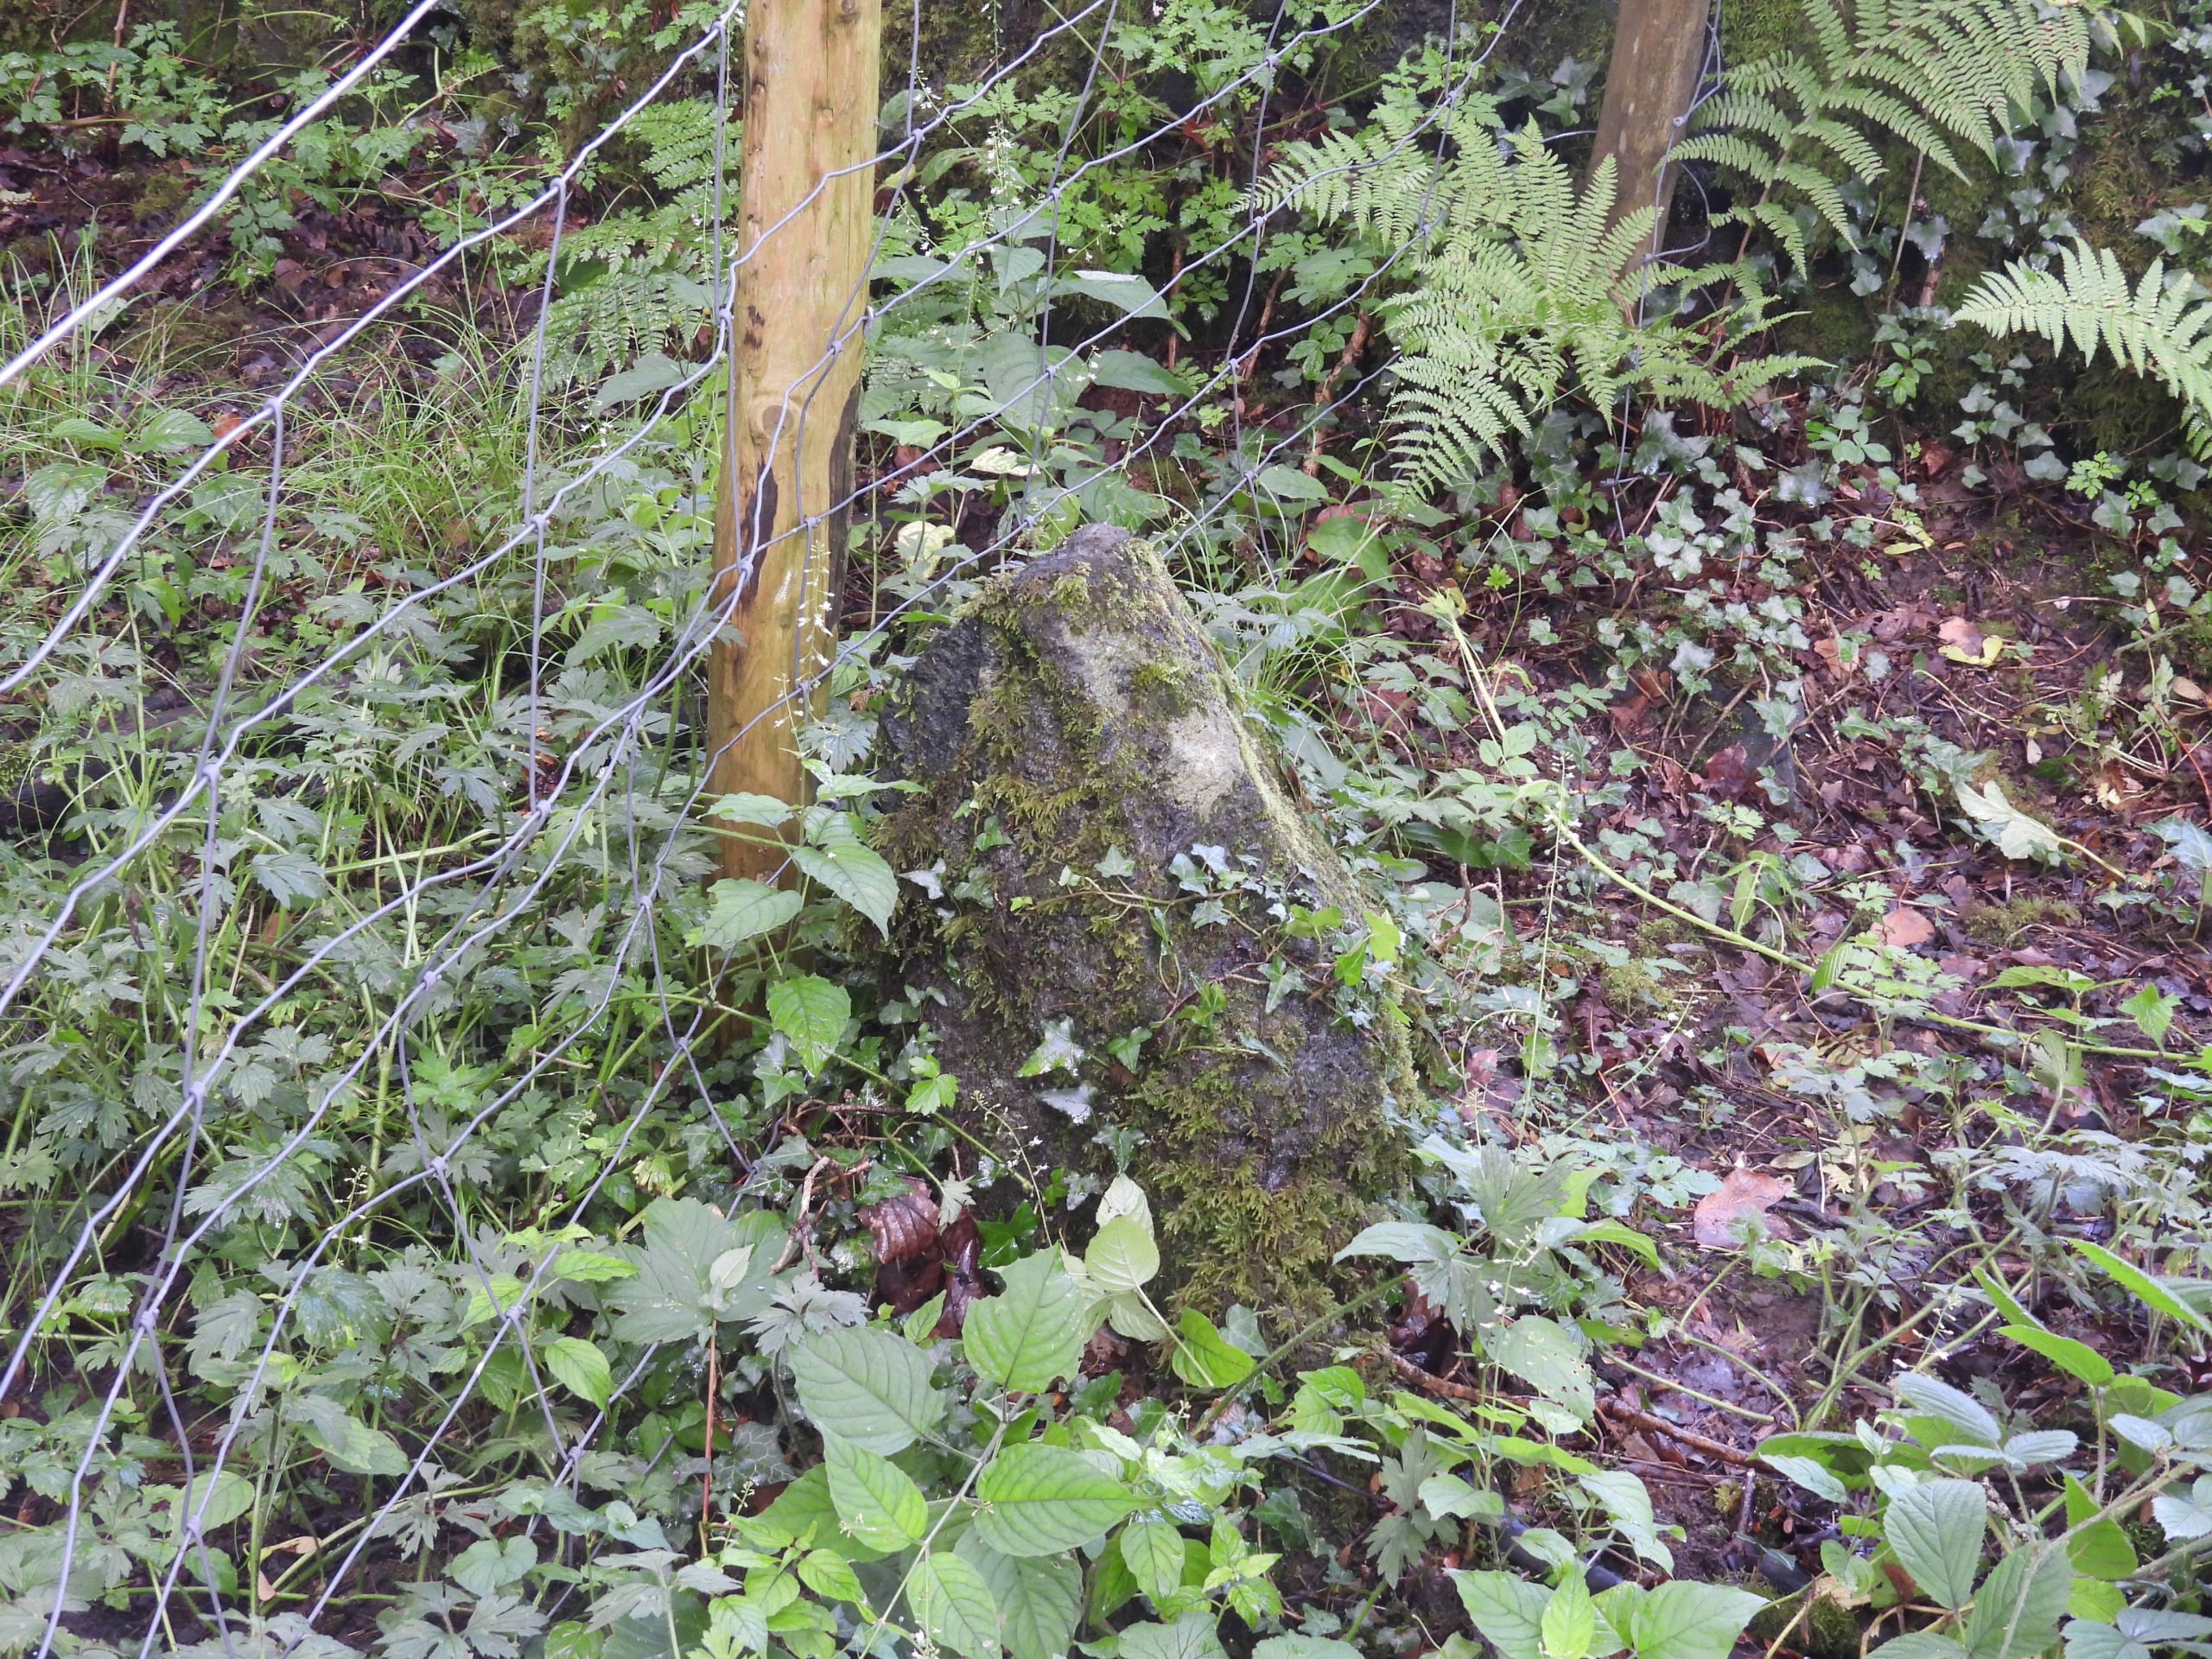 5. Old Boundary Stone 2c